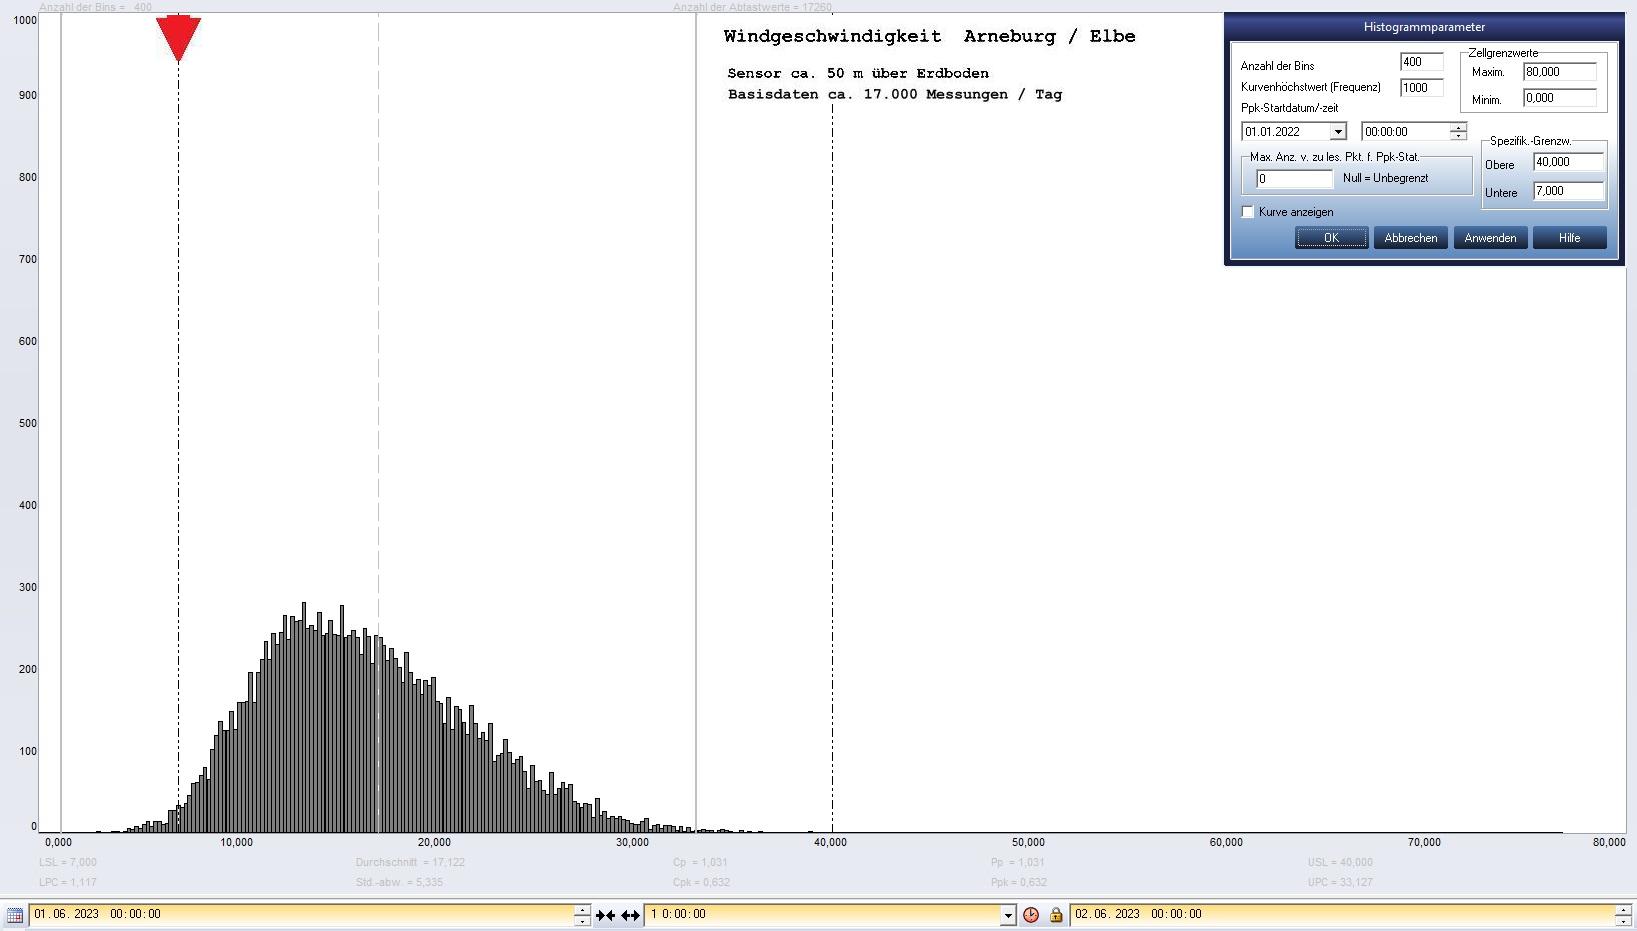 Arneburg Tages-Histogramm Winddaten, 01.06.2023
  Histogramm, Sensor auf Gebude, ca. 50 m ber Erdboden, Basis: 5s-Aufzeichnung